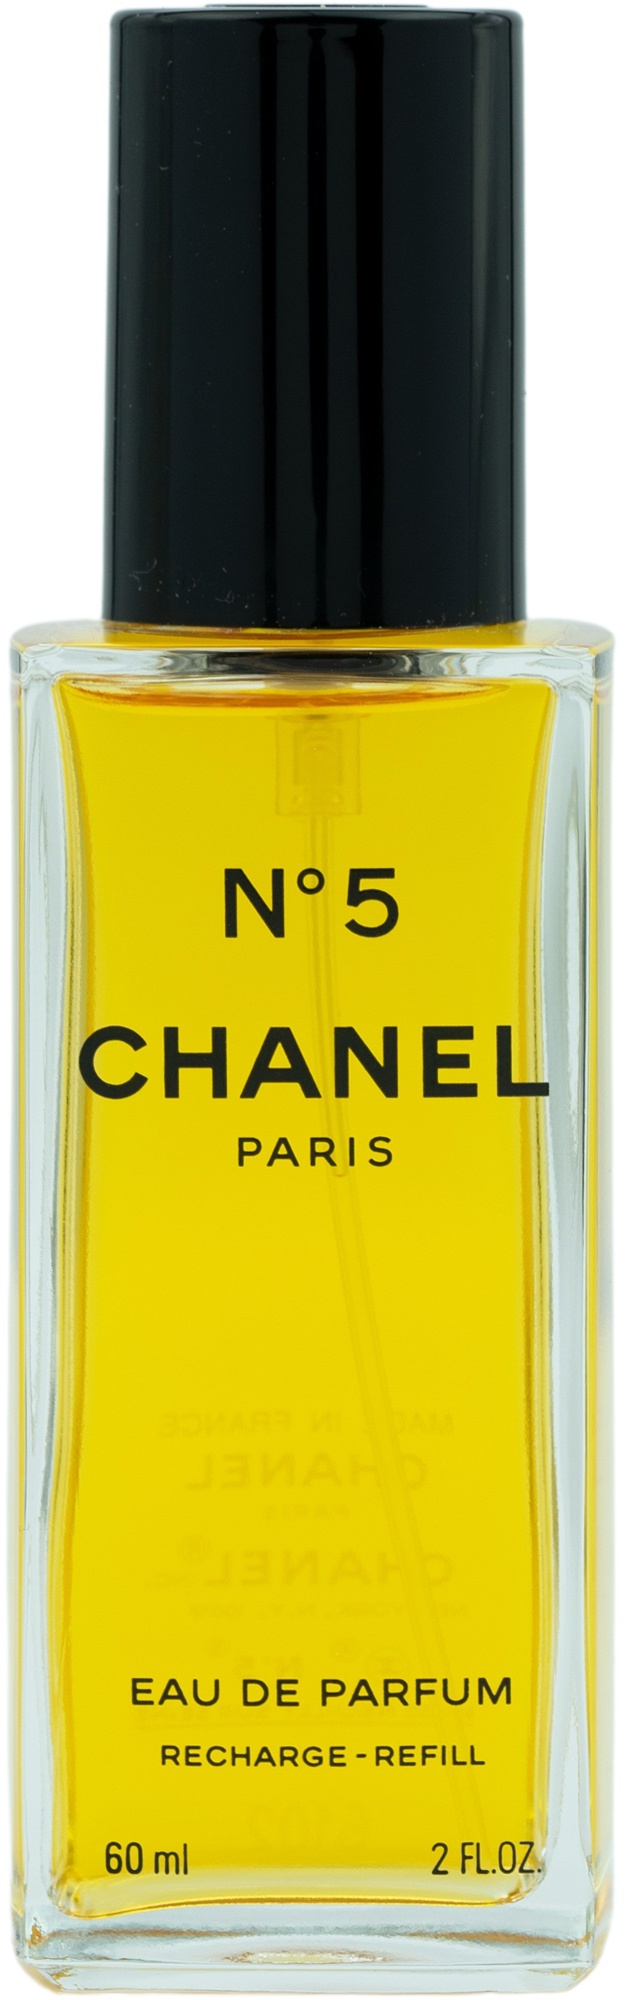 Chanel No. 5 Eau de Parfum ab 74,50 € kaufen